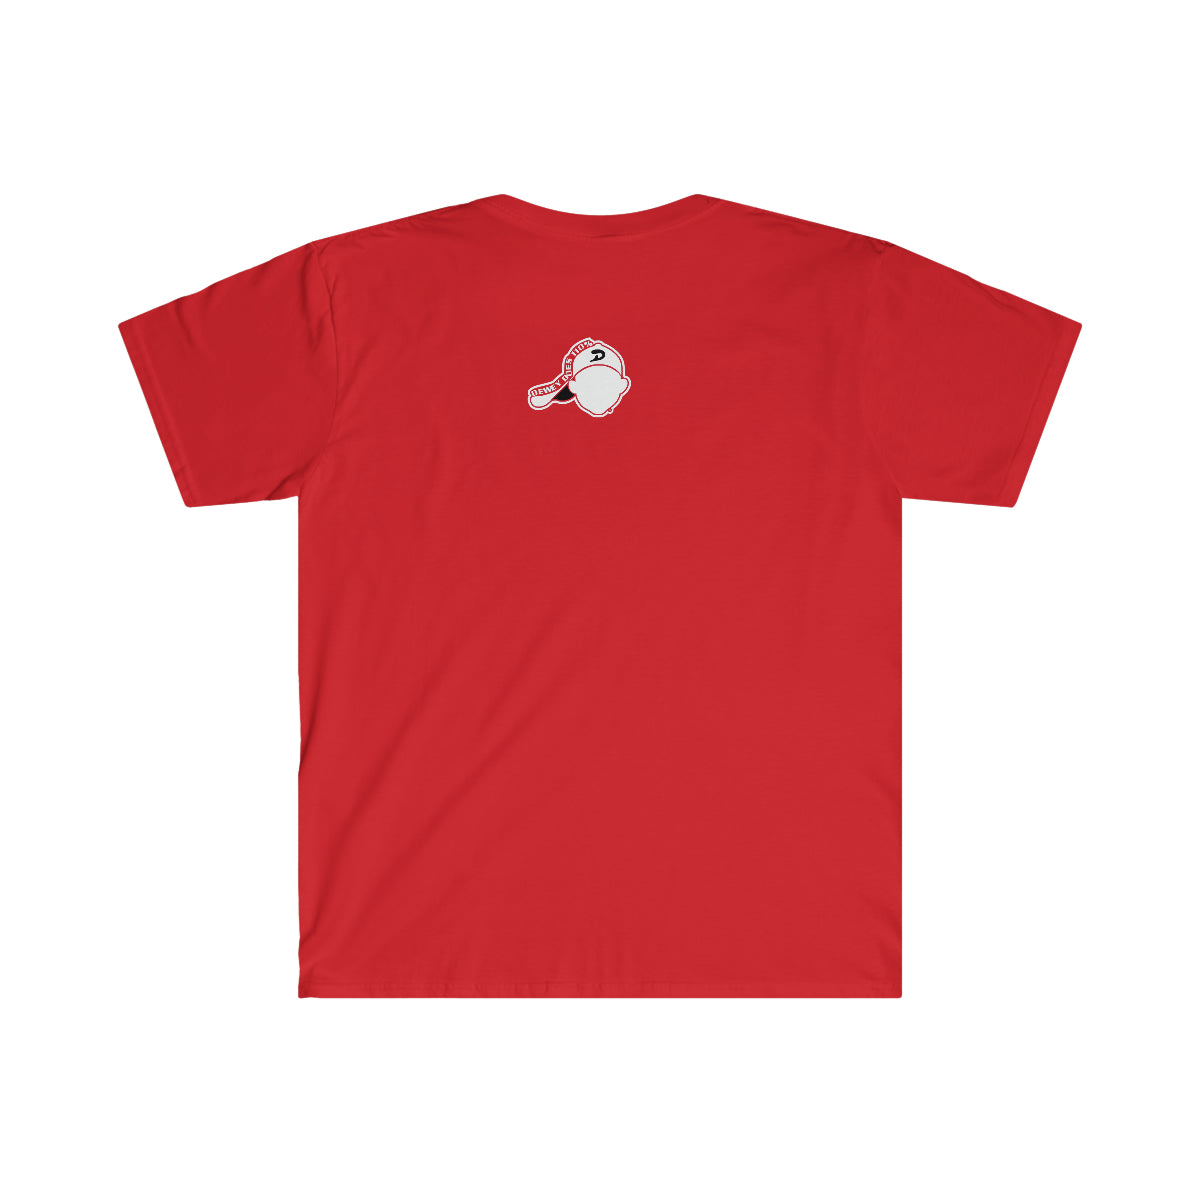 go get'em kid logo unisex softstyle t-shirt